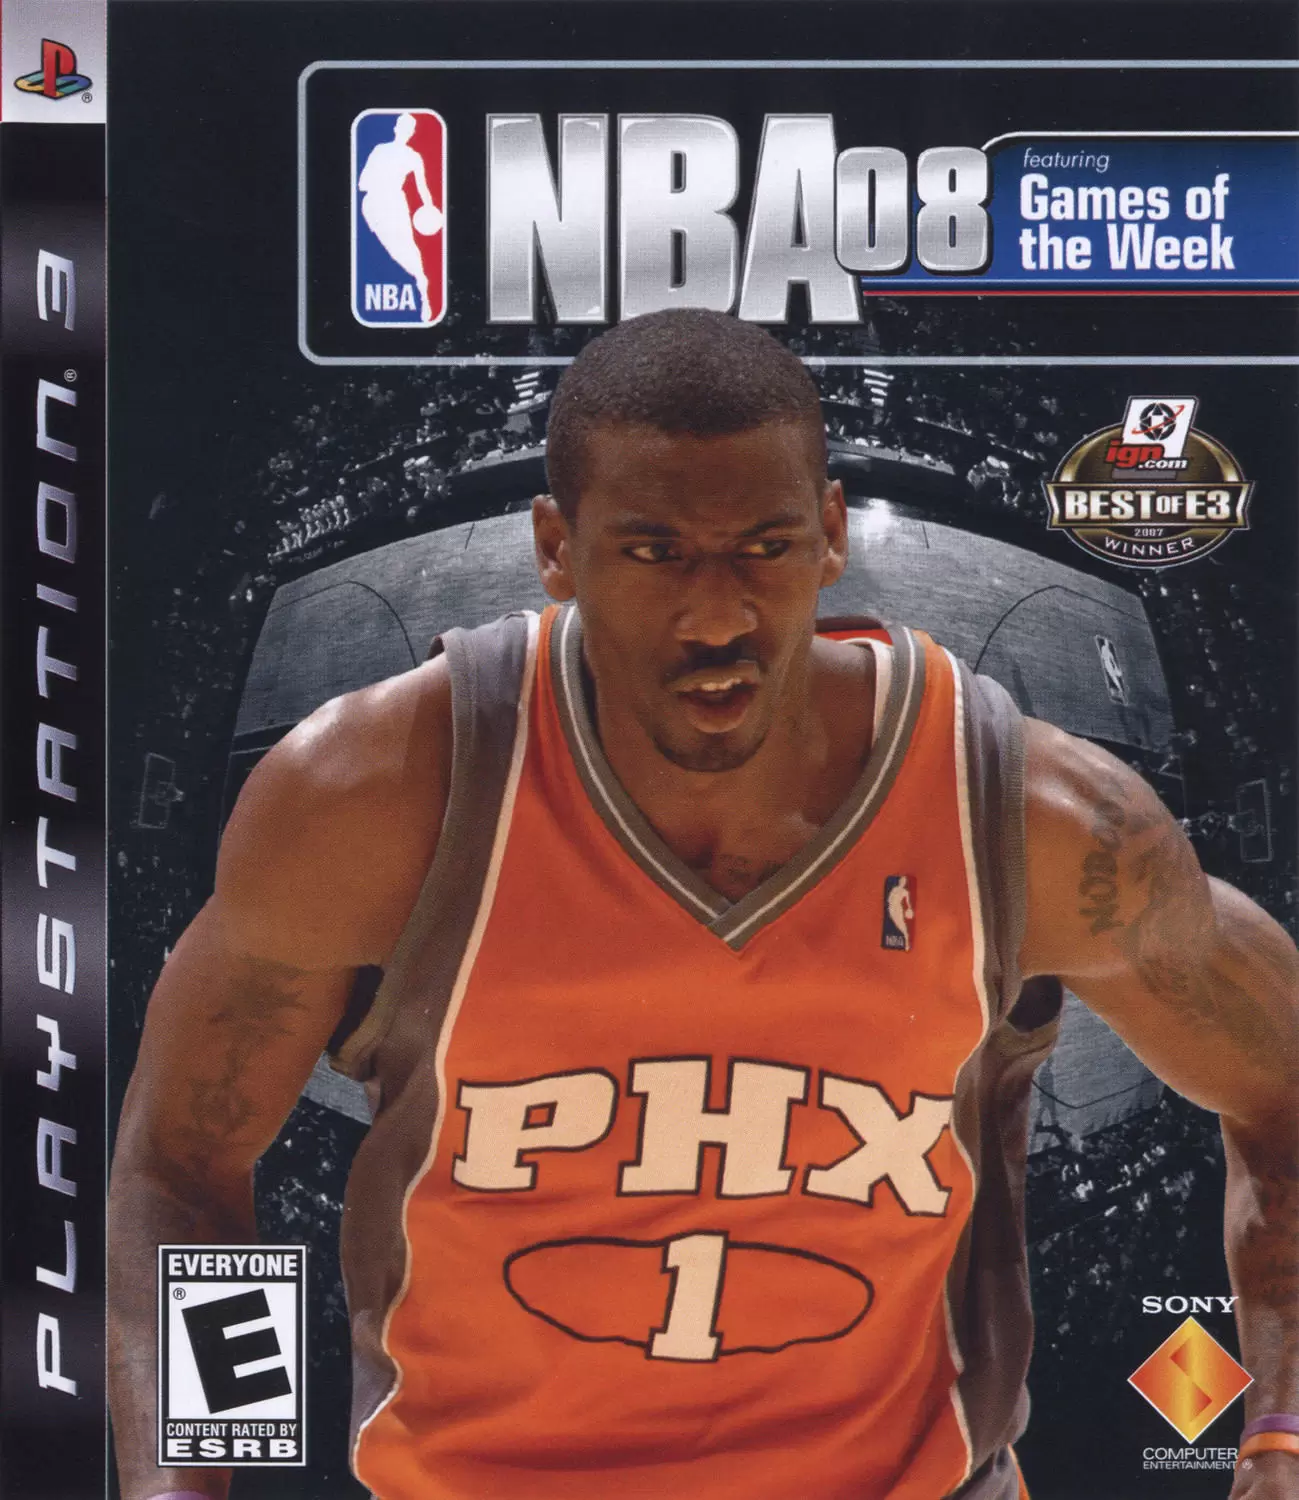 PS3 Games - NBA 08